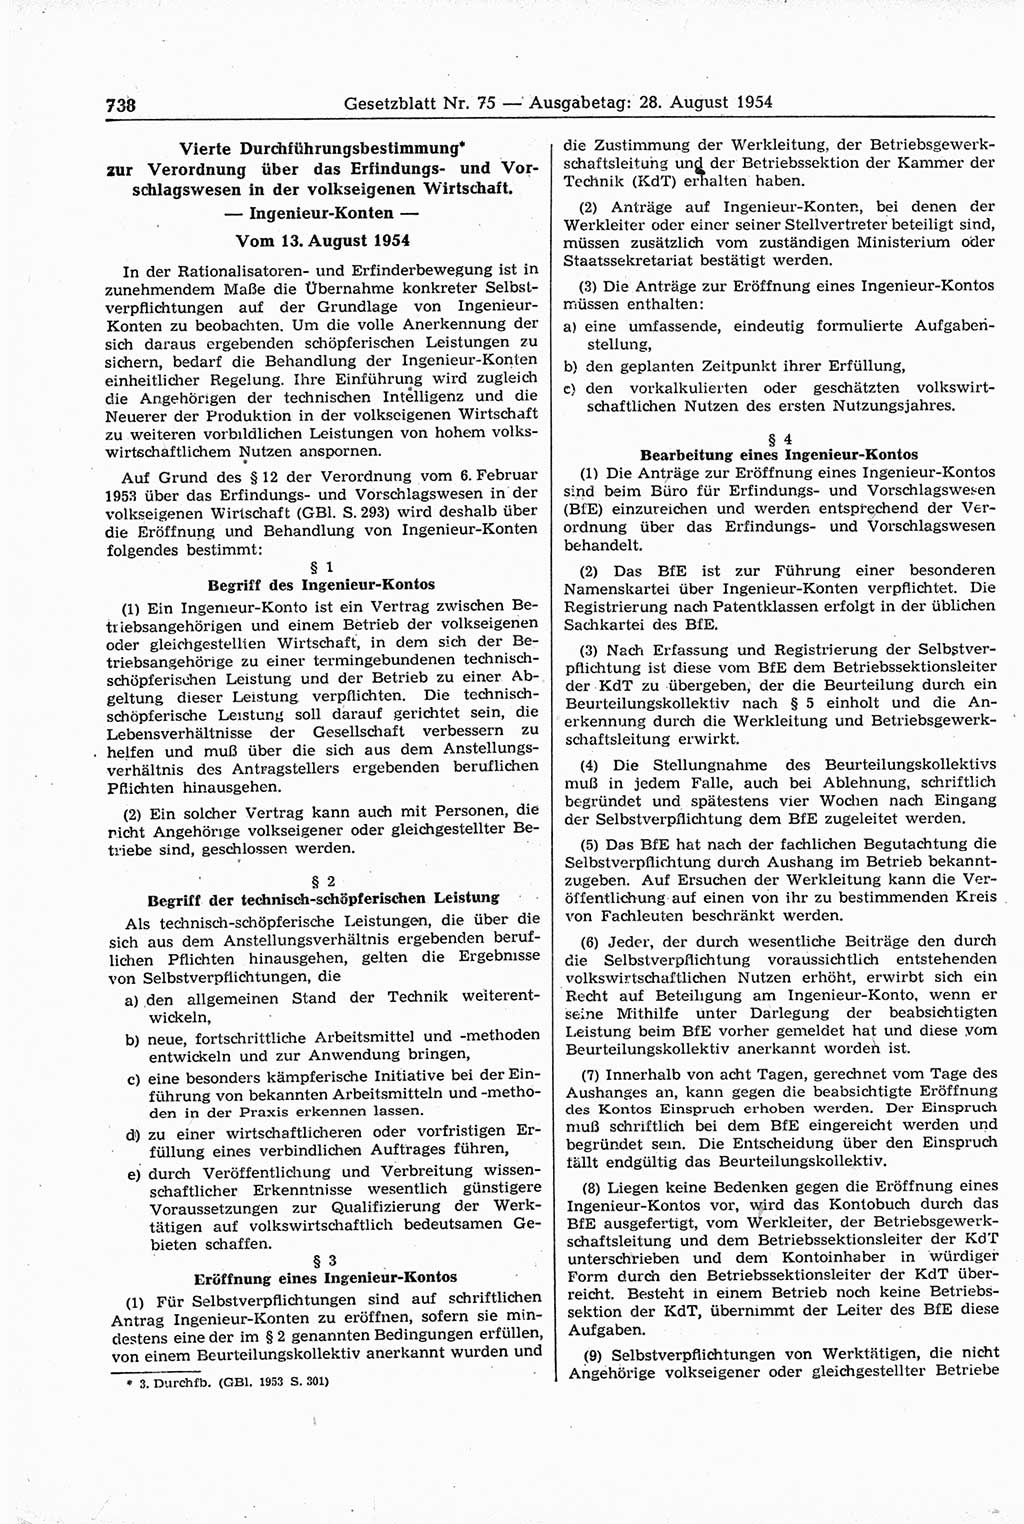 Gesetzblatt (GBl.) der Deutschen Demokratischen Republik (DDR) 1954, Seite 738 (GBl. DDR 1954, S. 738)